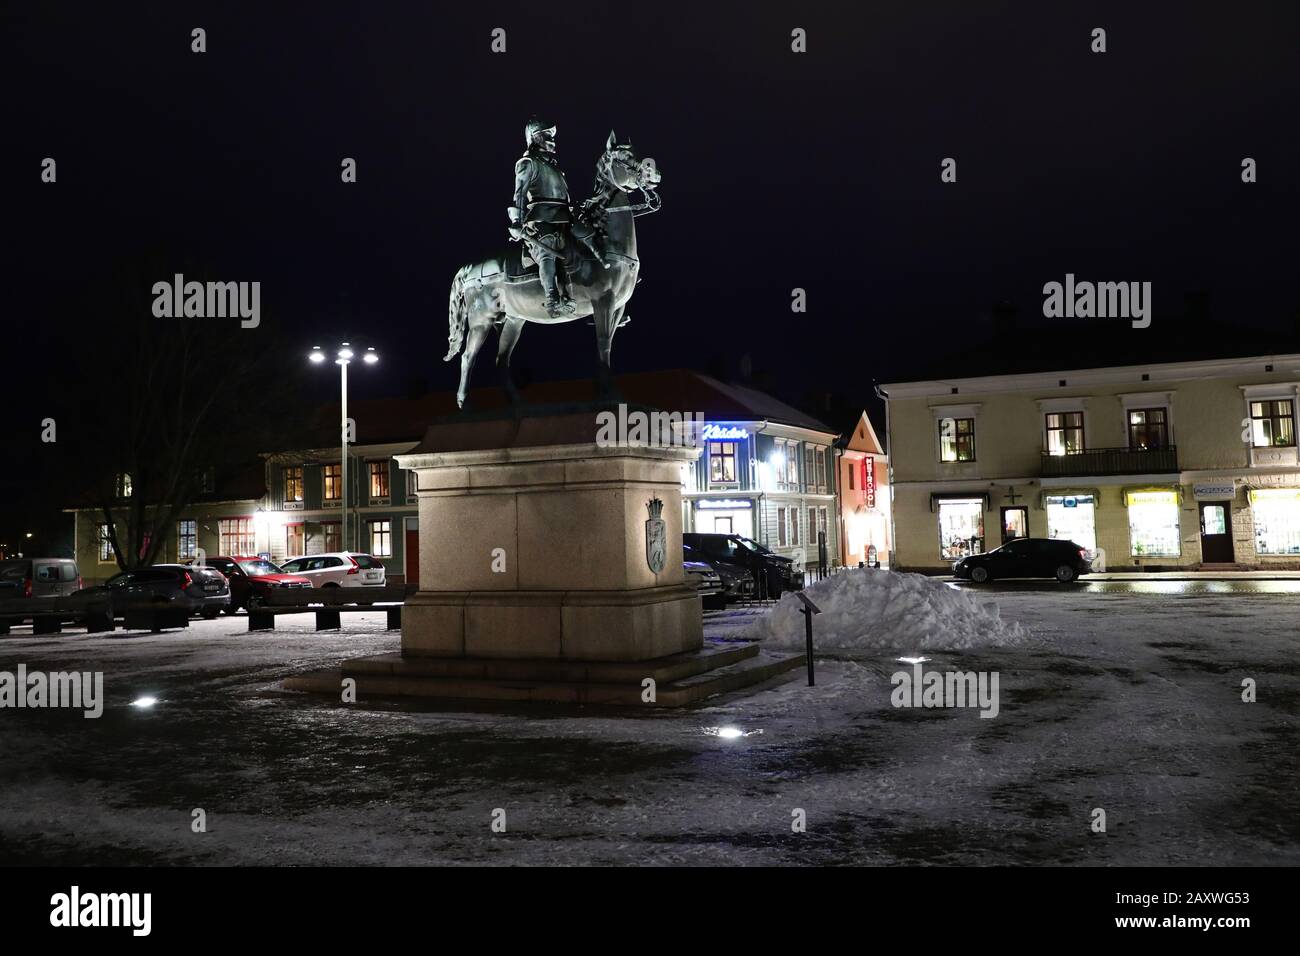 Eksjö, Schweden 20200207Der Hauptplatz mit einem Reiterstandbild eines Soldaten des Husarenregiments Småland. Foto Jeppe Gustafsson Stockfoto